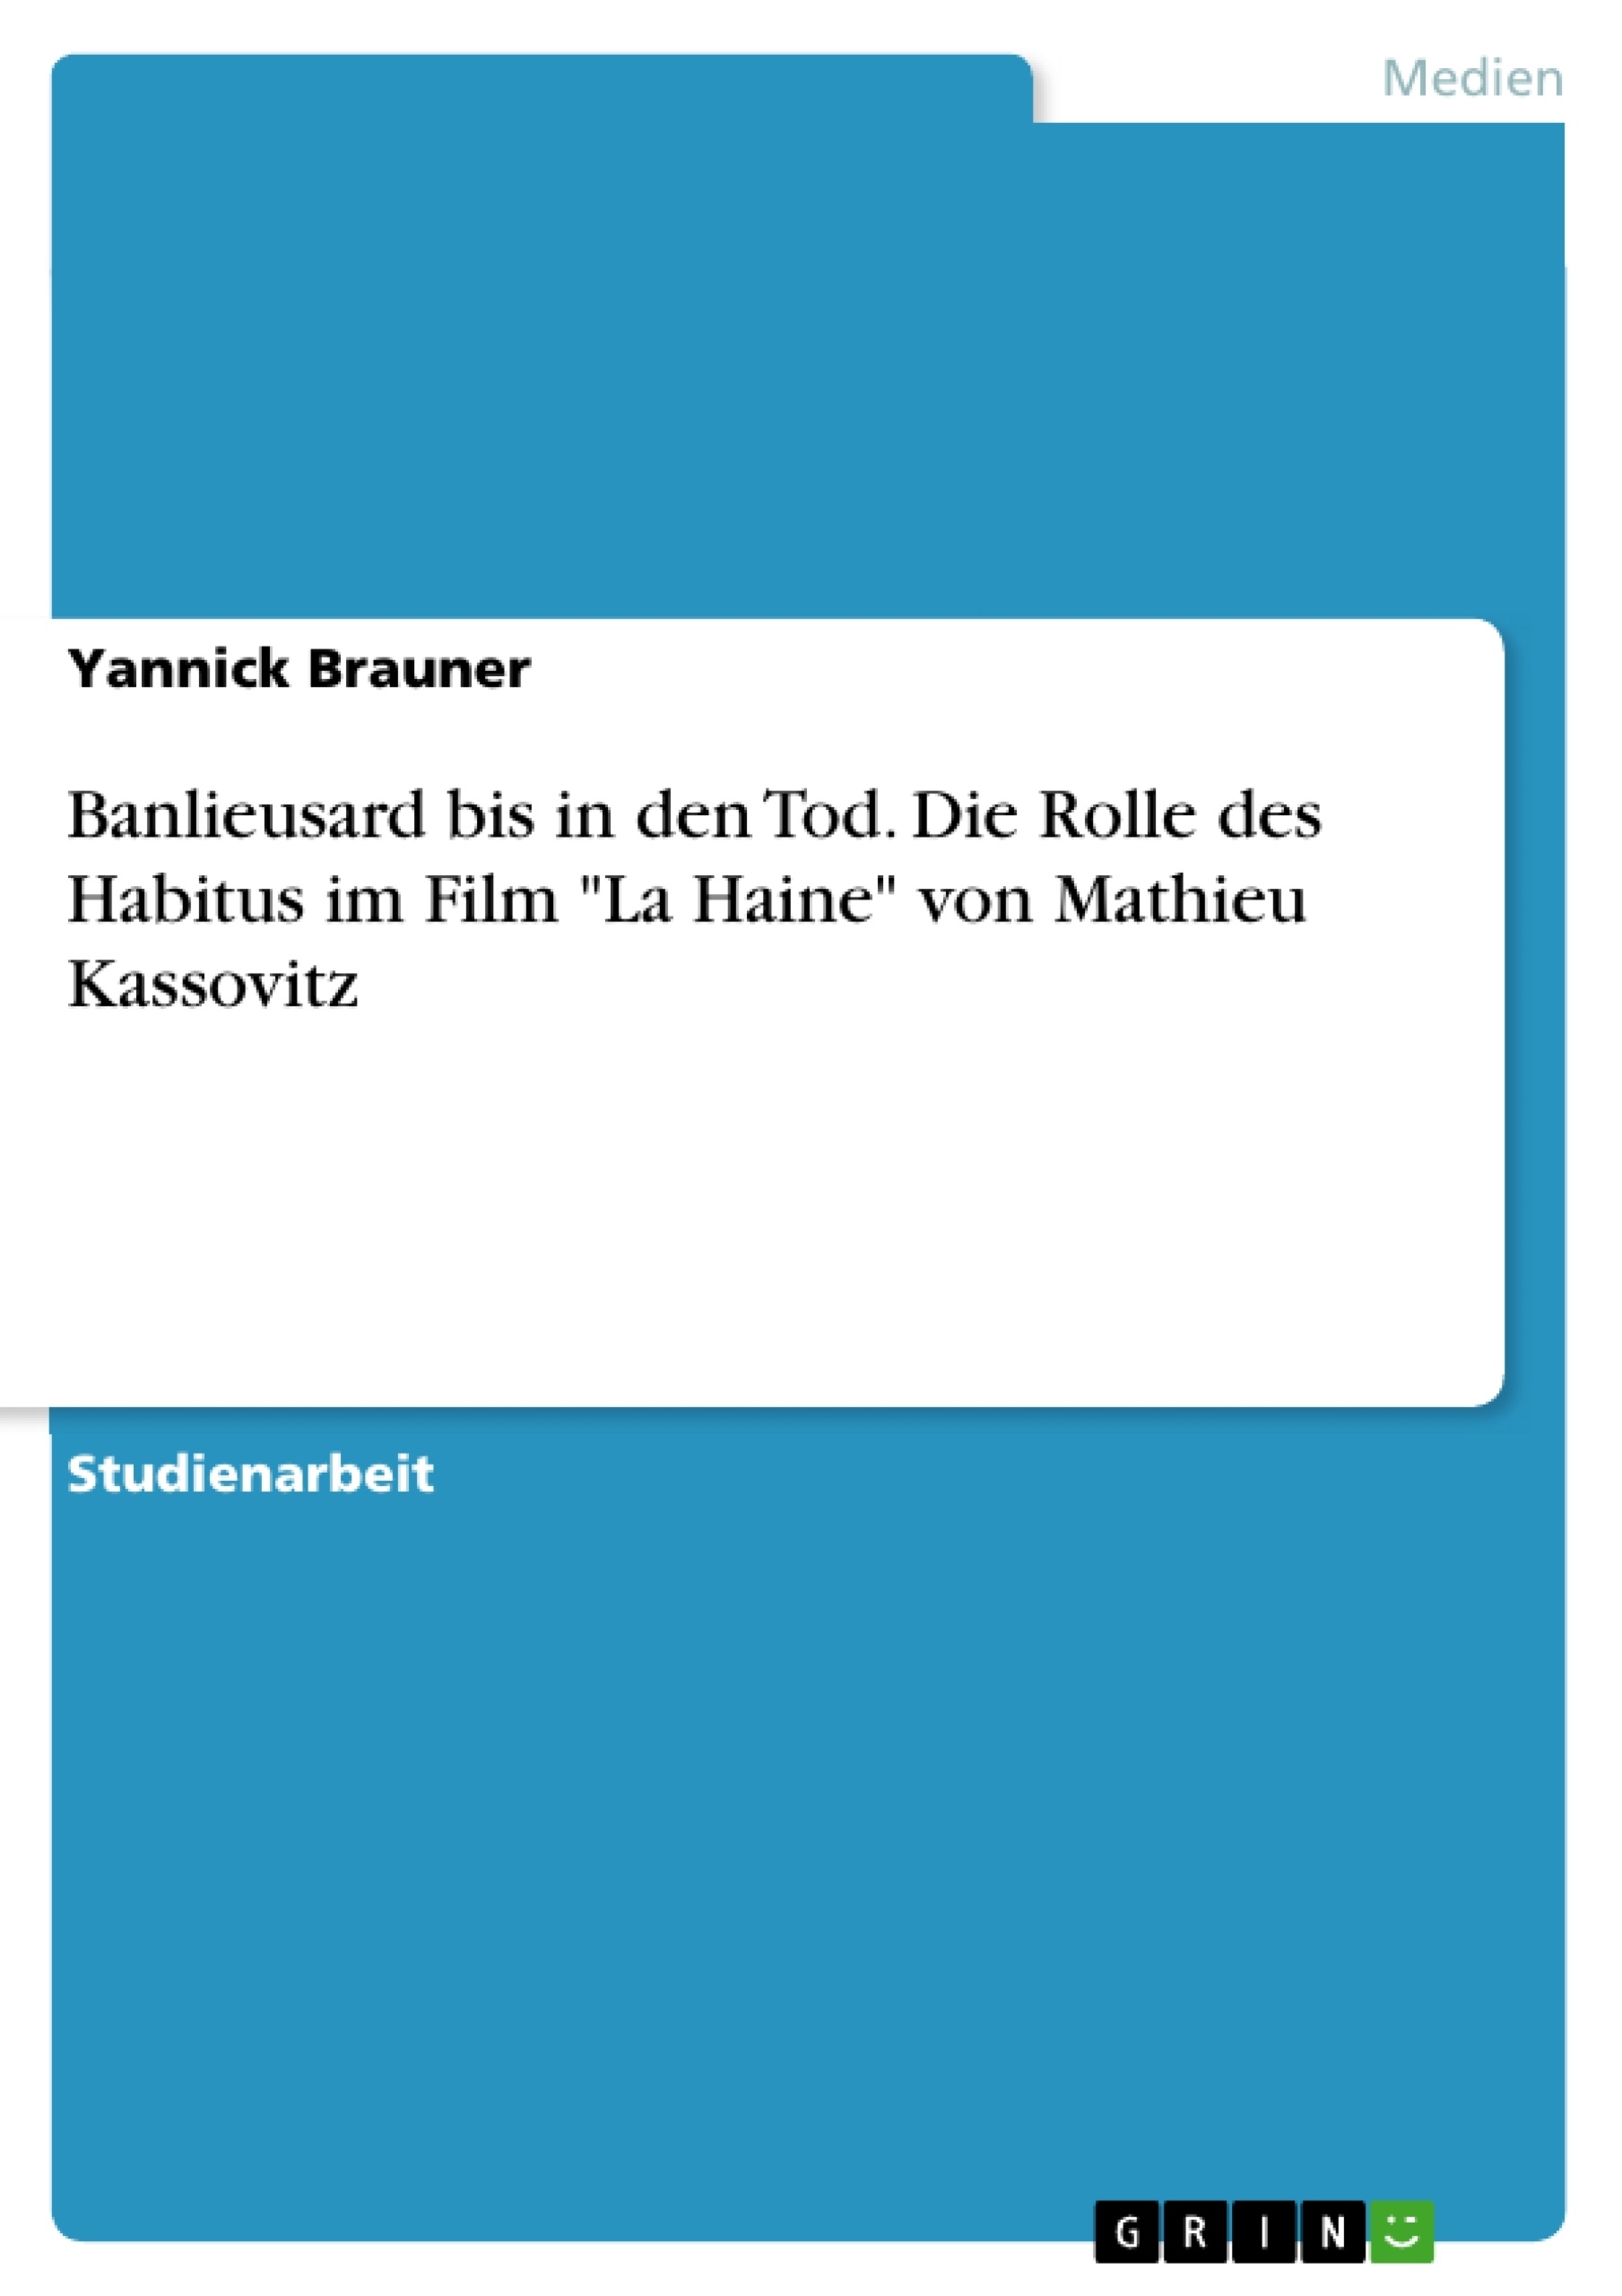 Título: Banlieusard bis in den Tod. Die Rolle des Habitus im Film "La Haine" von Mathieu Kassovitz